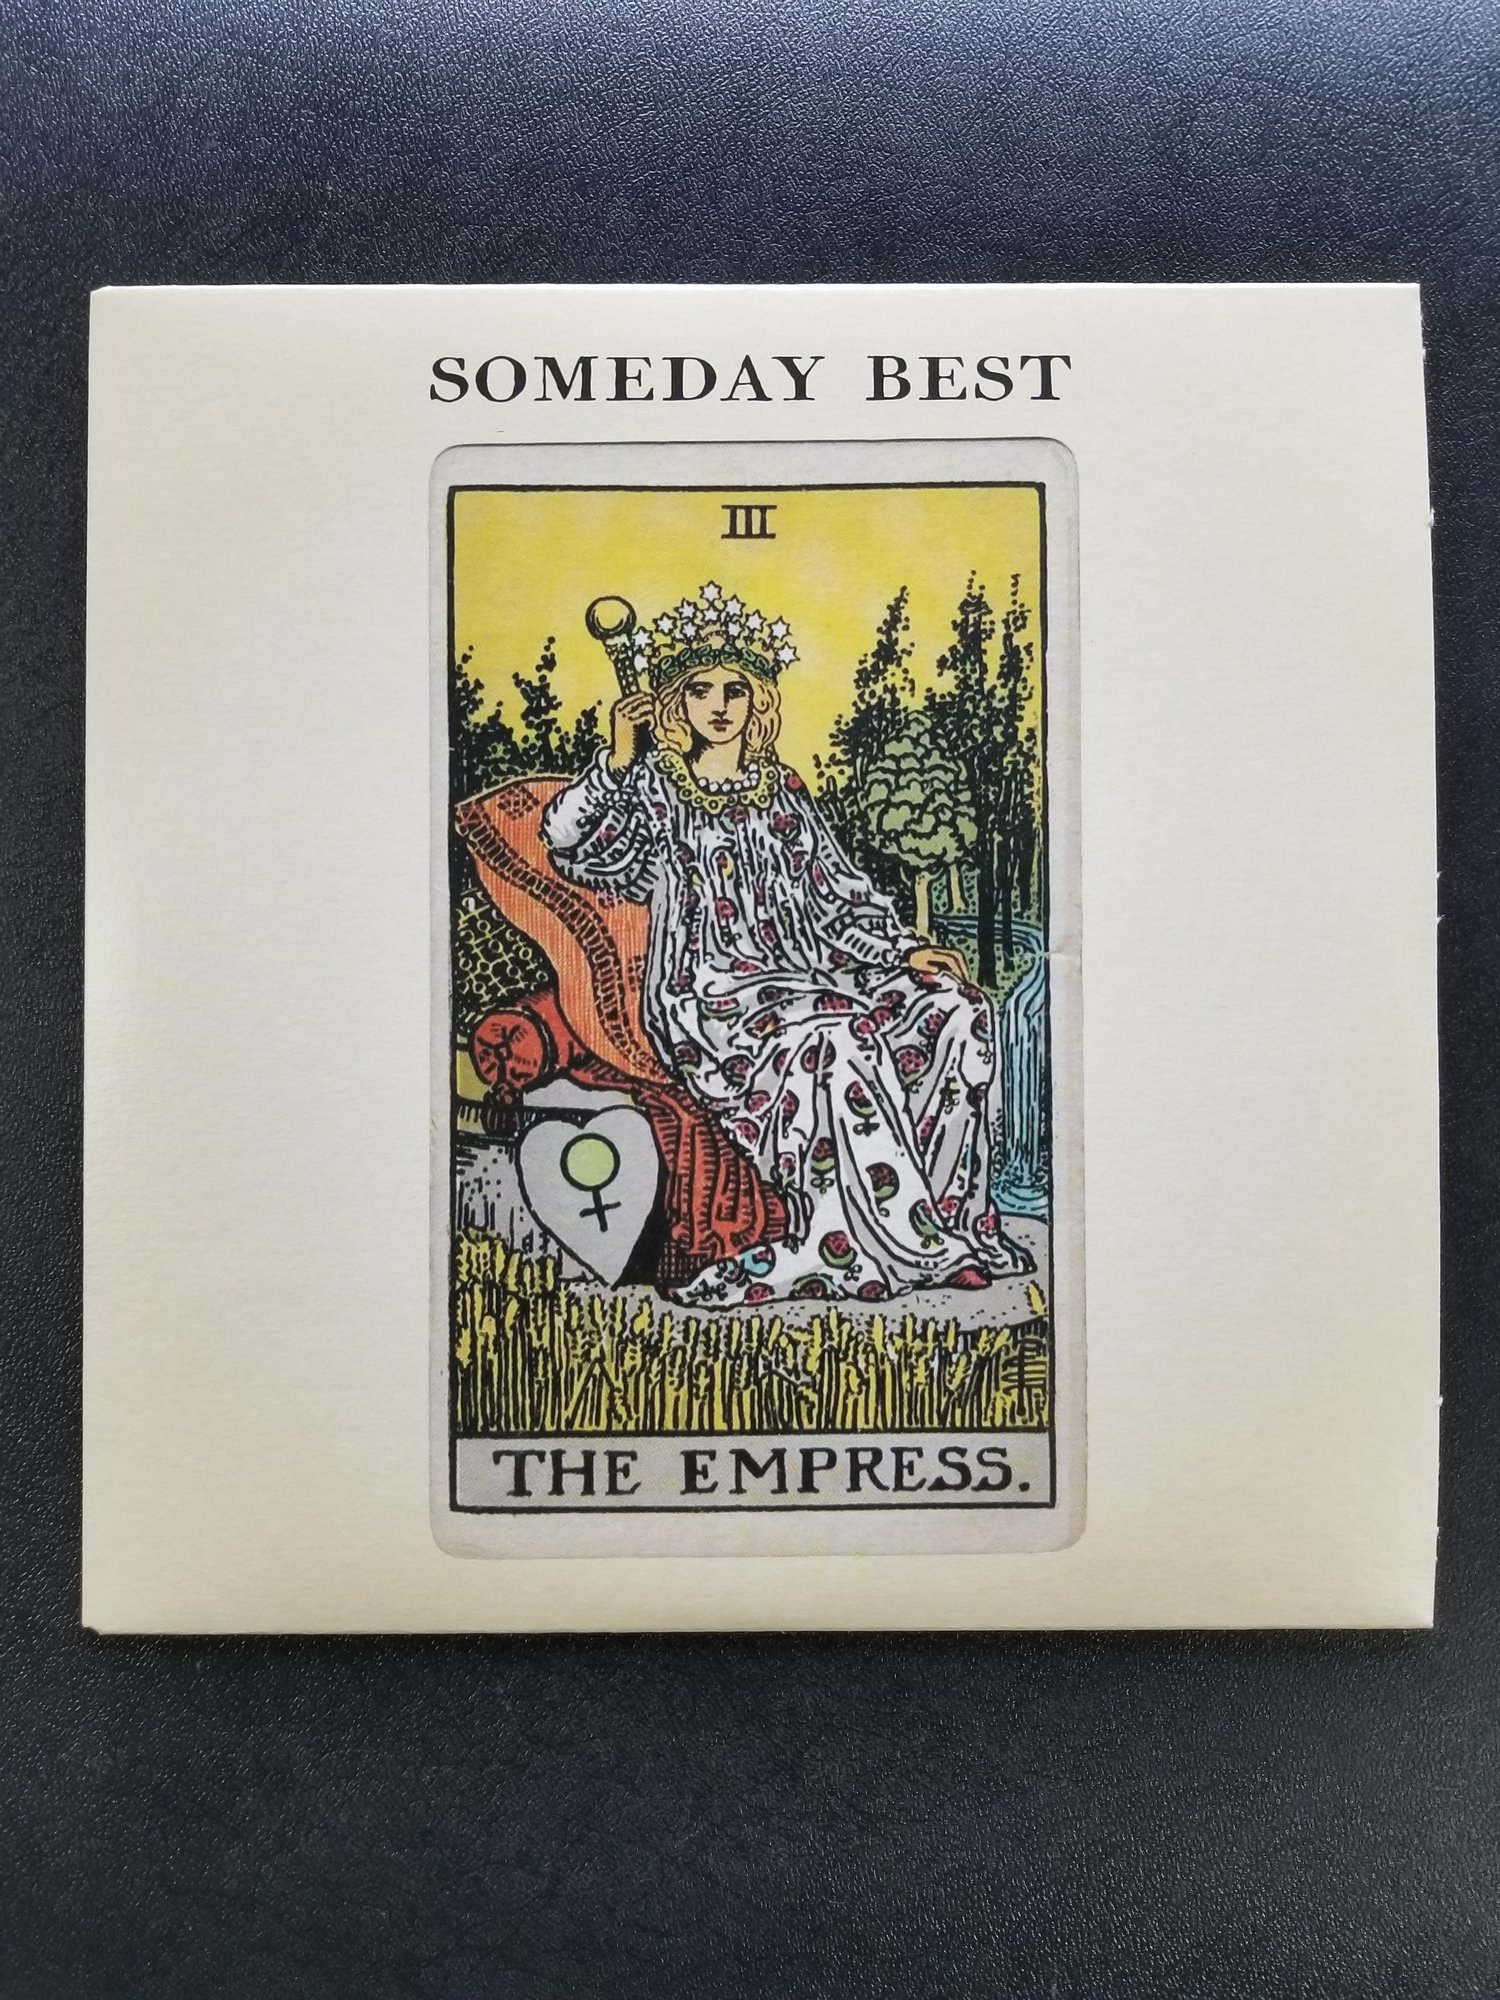 Image of Someday Best - III (Empress) EP